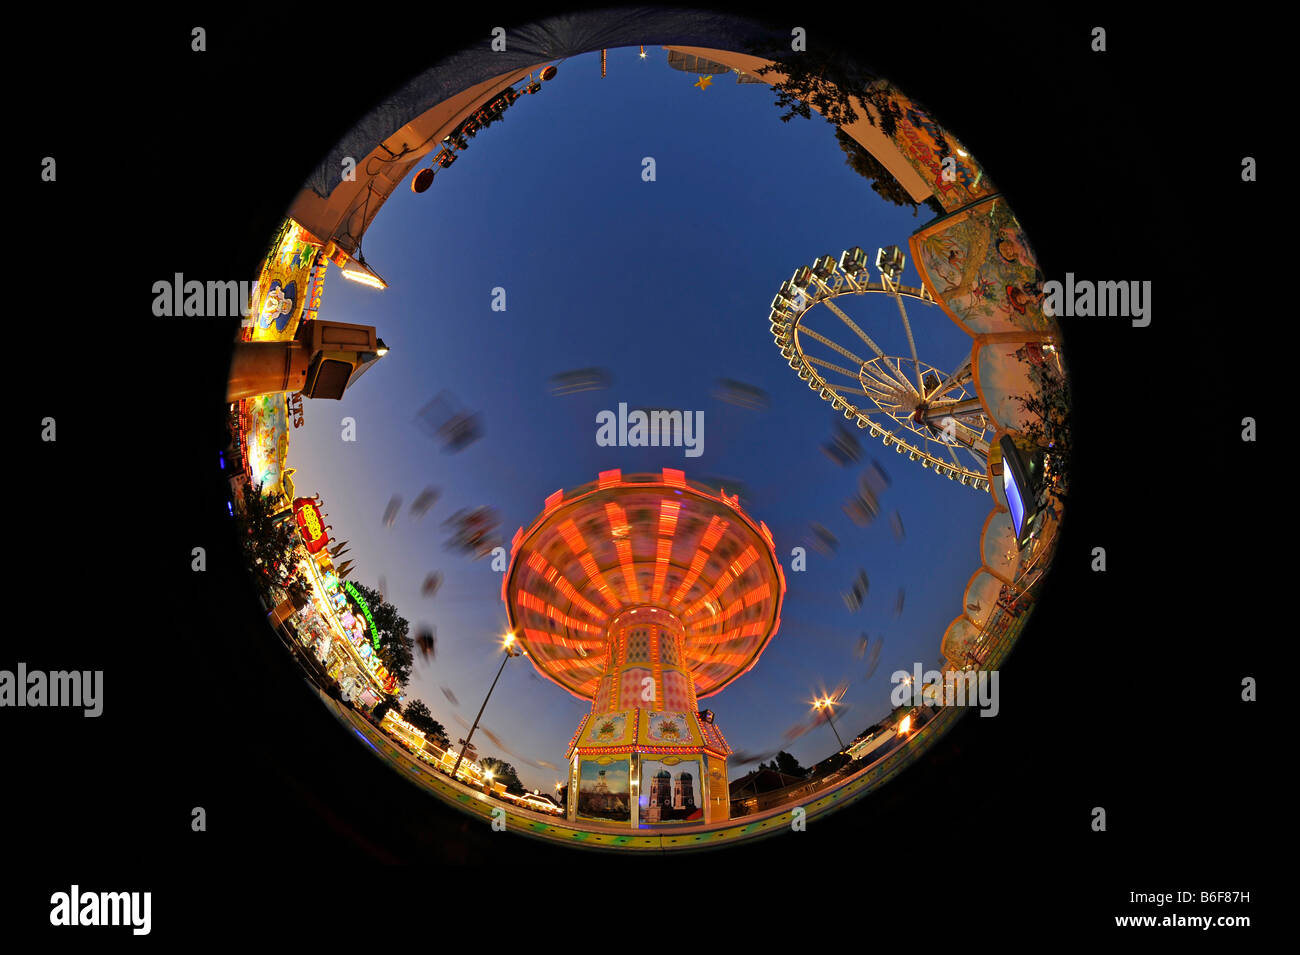 Chairoplane e ruota panoramica Ferris attraverso una lente fish-eye, night shot, al Cannstatter Volksfest Fiera di Stoccarda, Baden-Wuertte Foto Stock